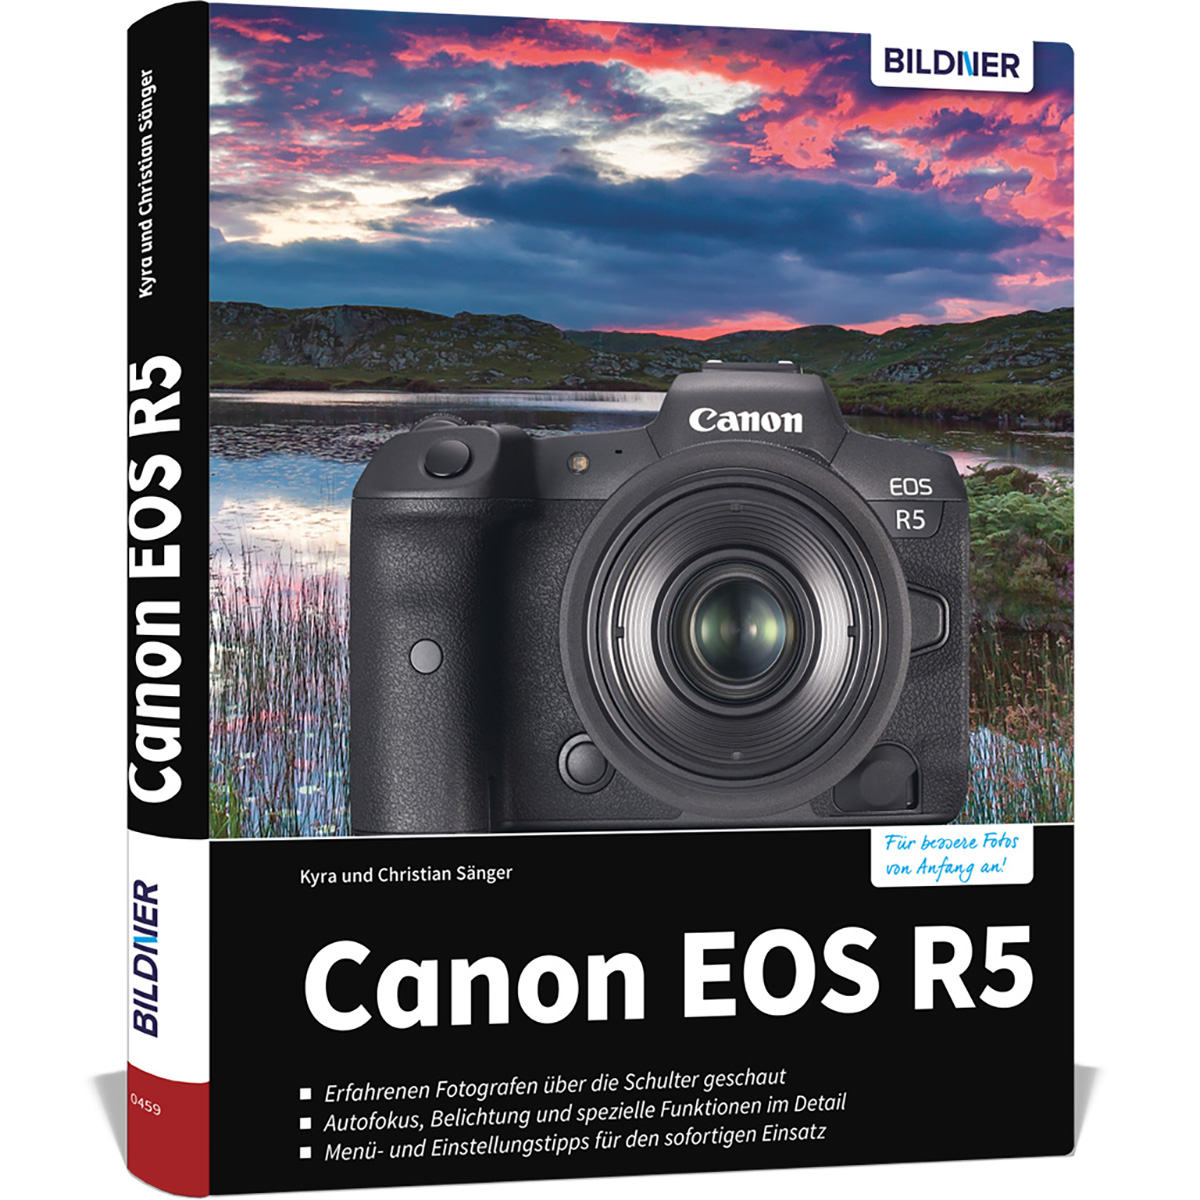 Canon EOS R5 Kamera - Praxisbuch zu Das Ihrer umfangreiche